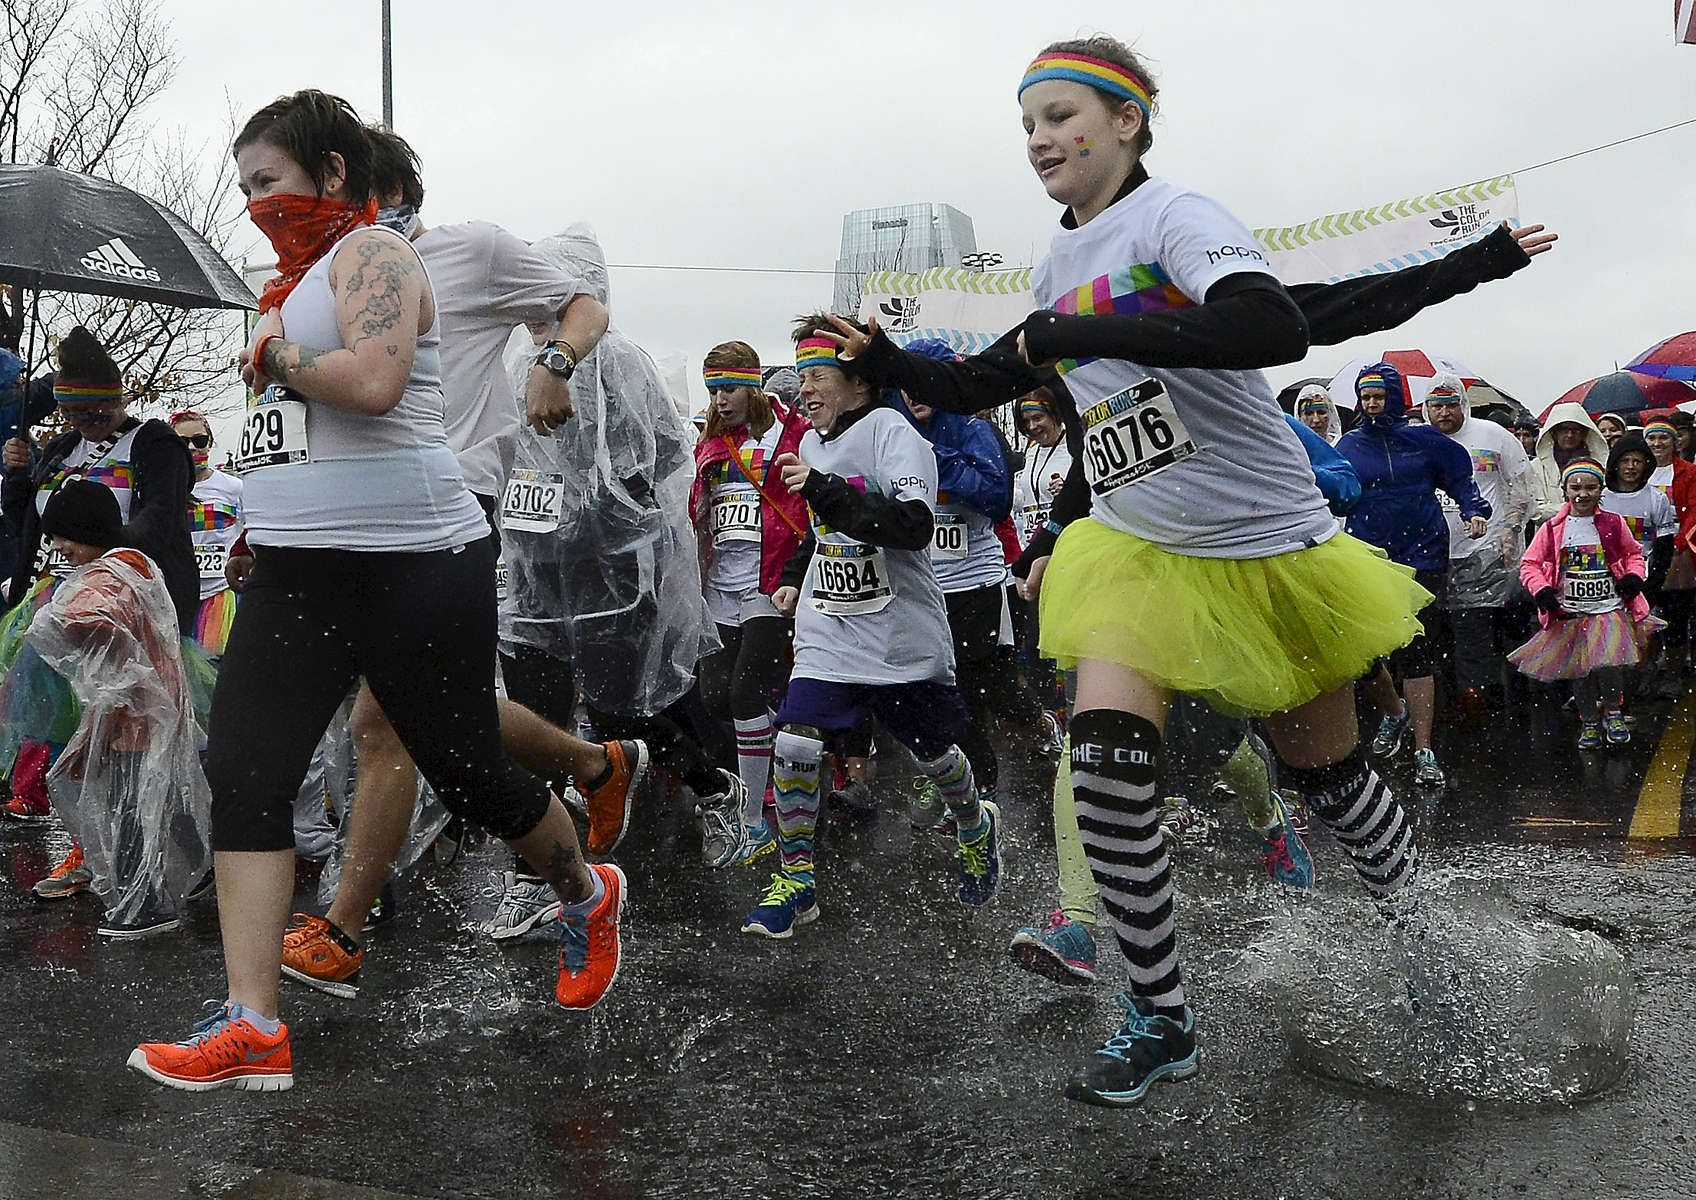 Runners splash through the rain at the start of the 5K Color Run in Nashville, Tenn. (Mark Zaleski/ For The Tennessean)